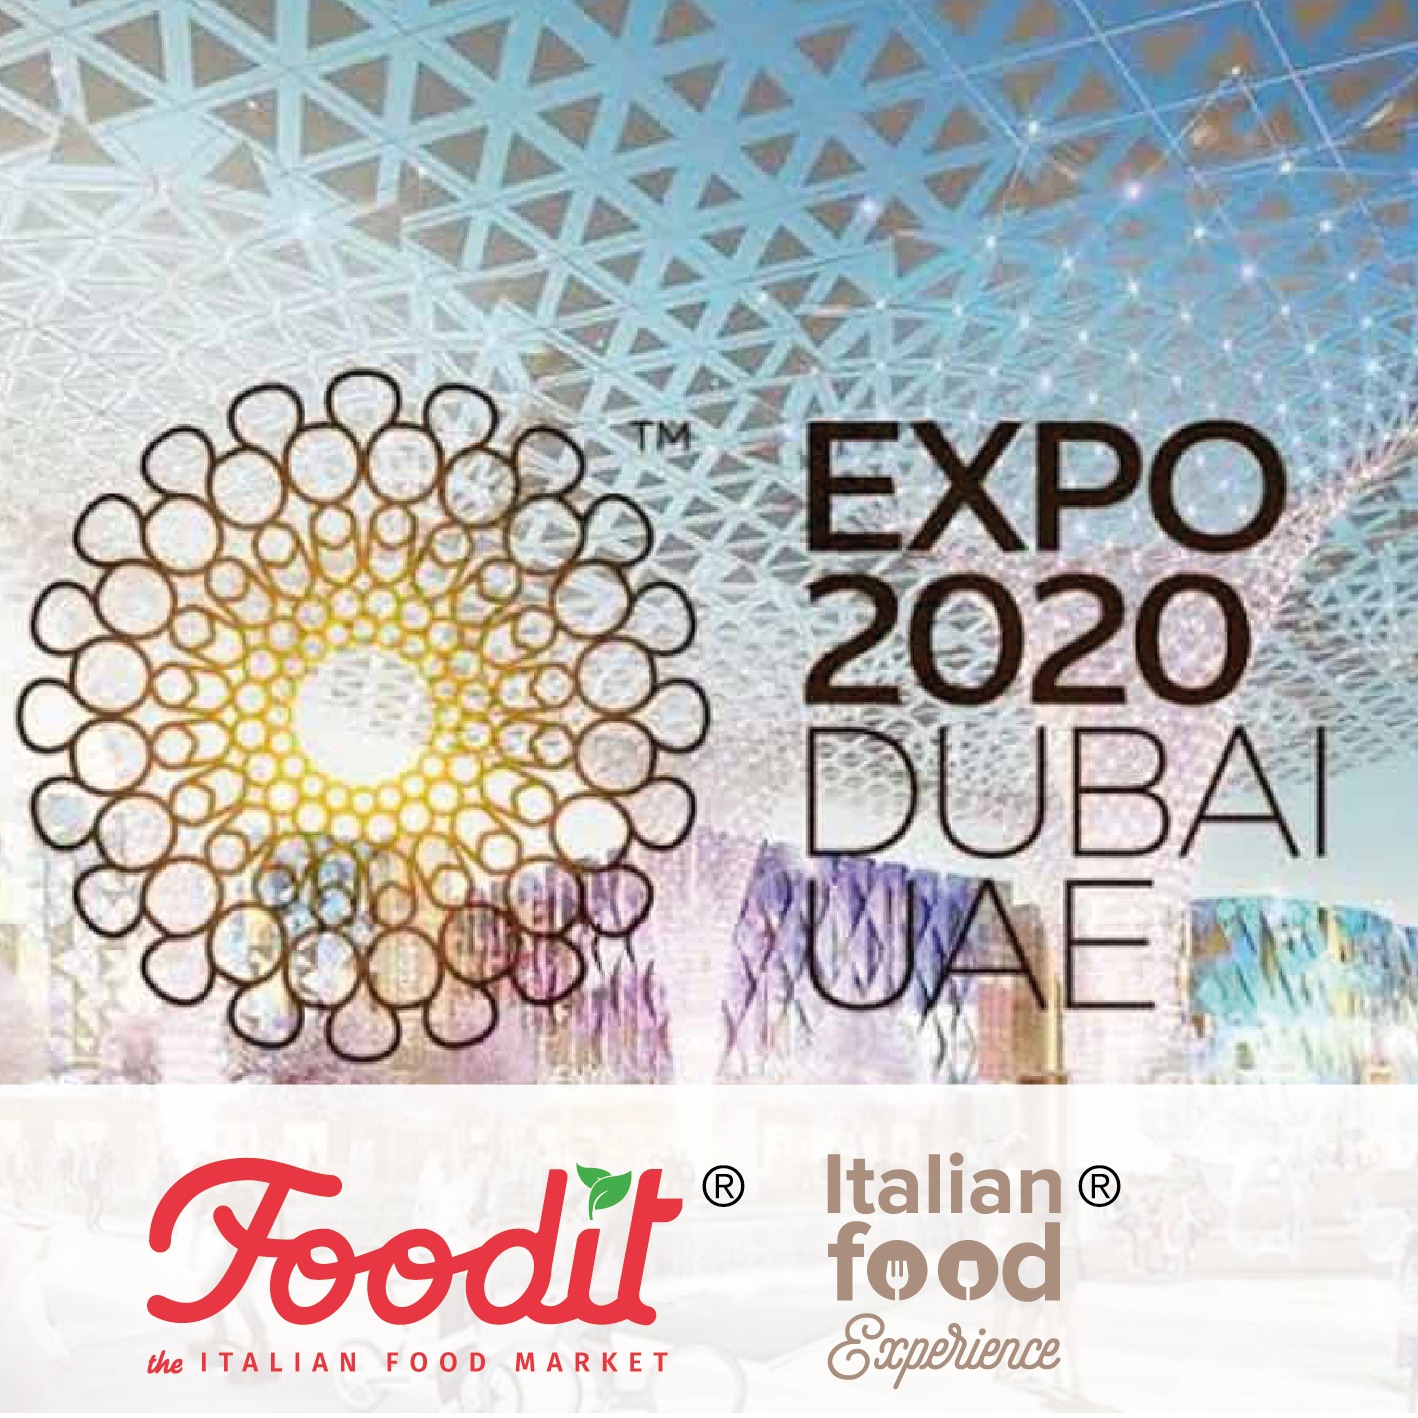 Foodit partecipa agli eventi previsti al Dubai Exhibition Centre dal 22 al 27 marzo 2022 con operatori del settore Food, Turismo e Made in Italy.